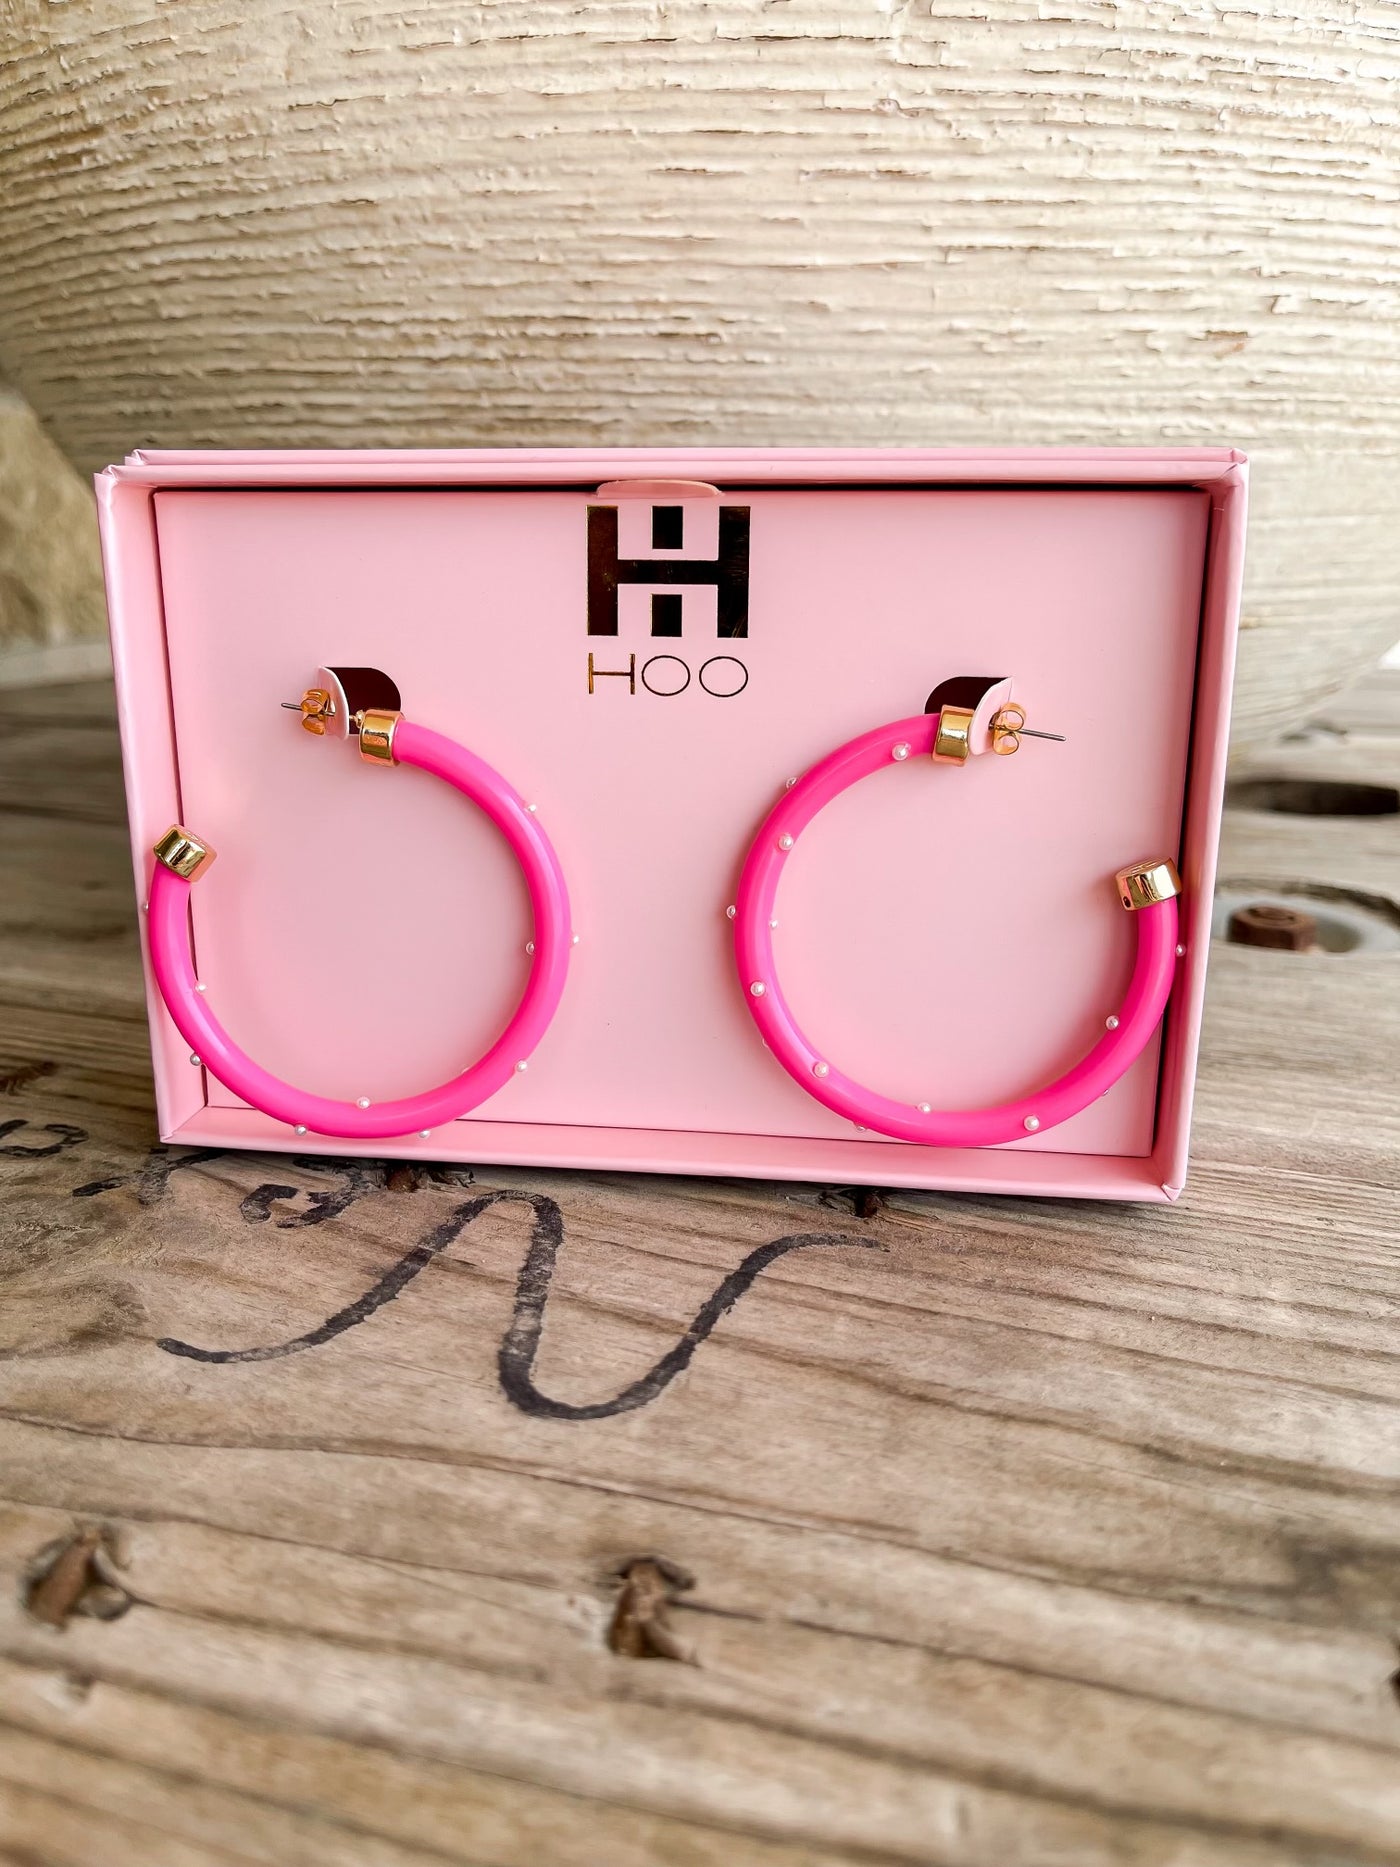 Hoo Hoops Hot Pink Pearl Hoops